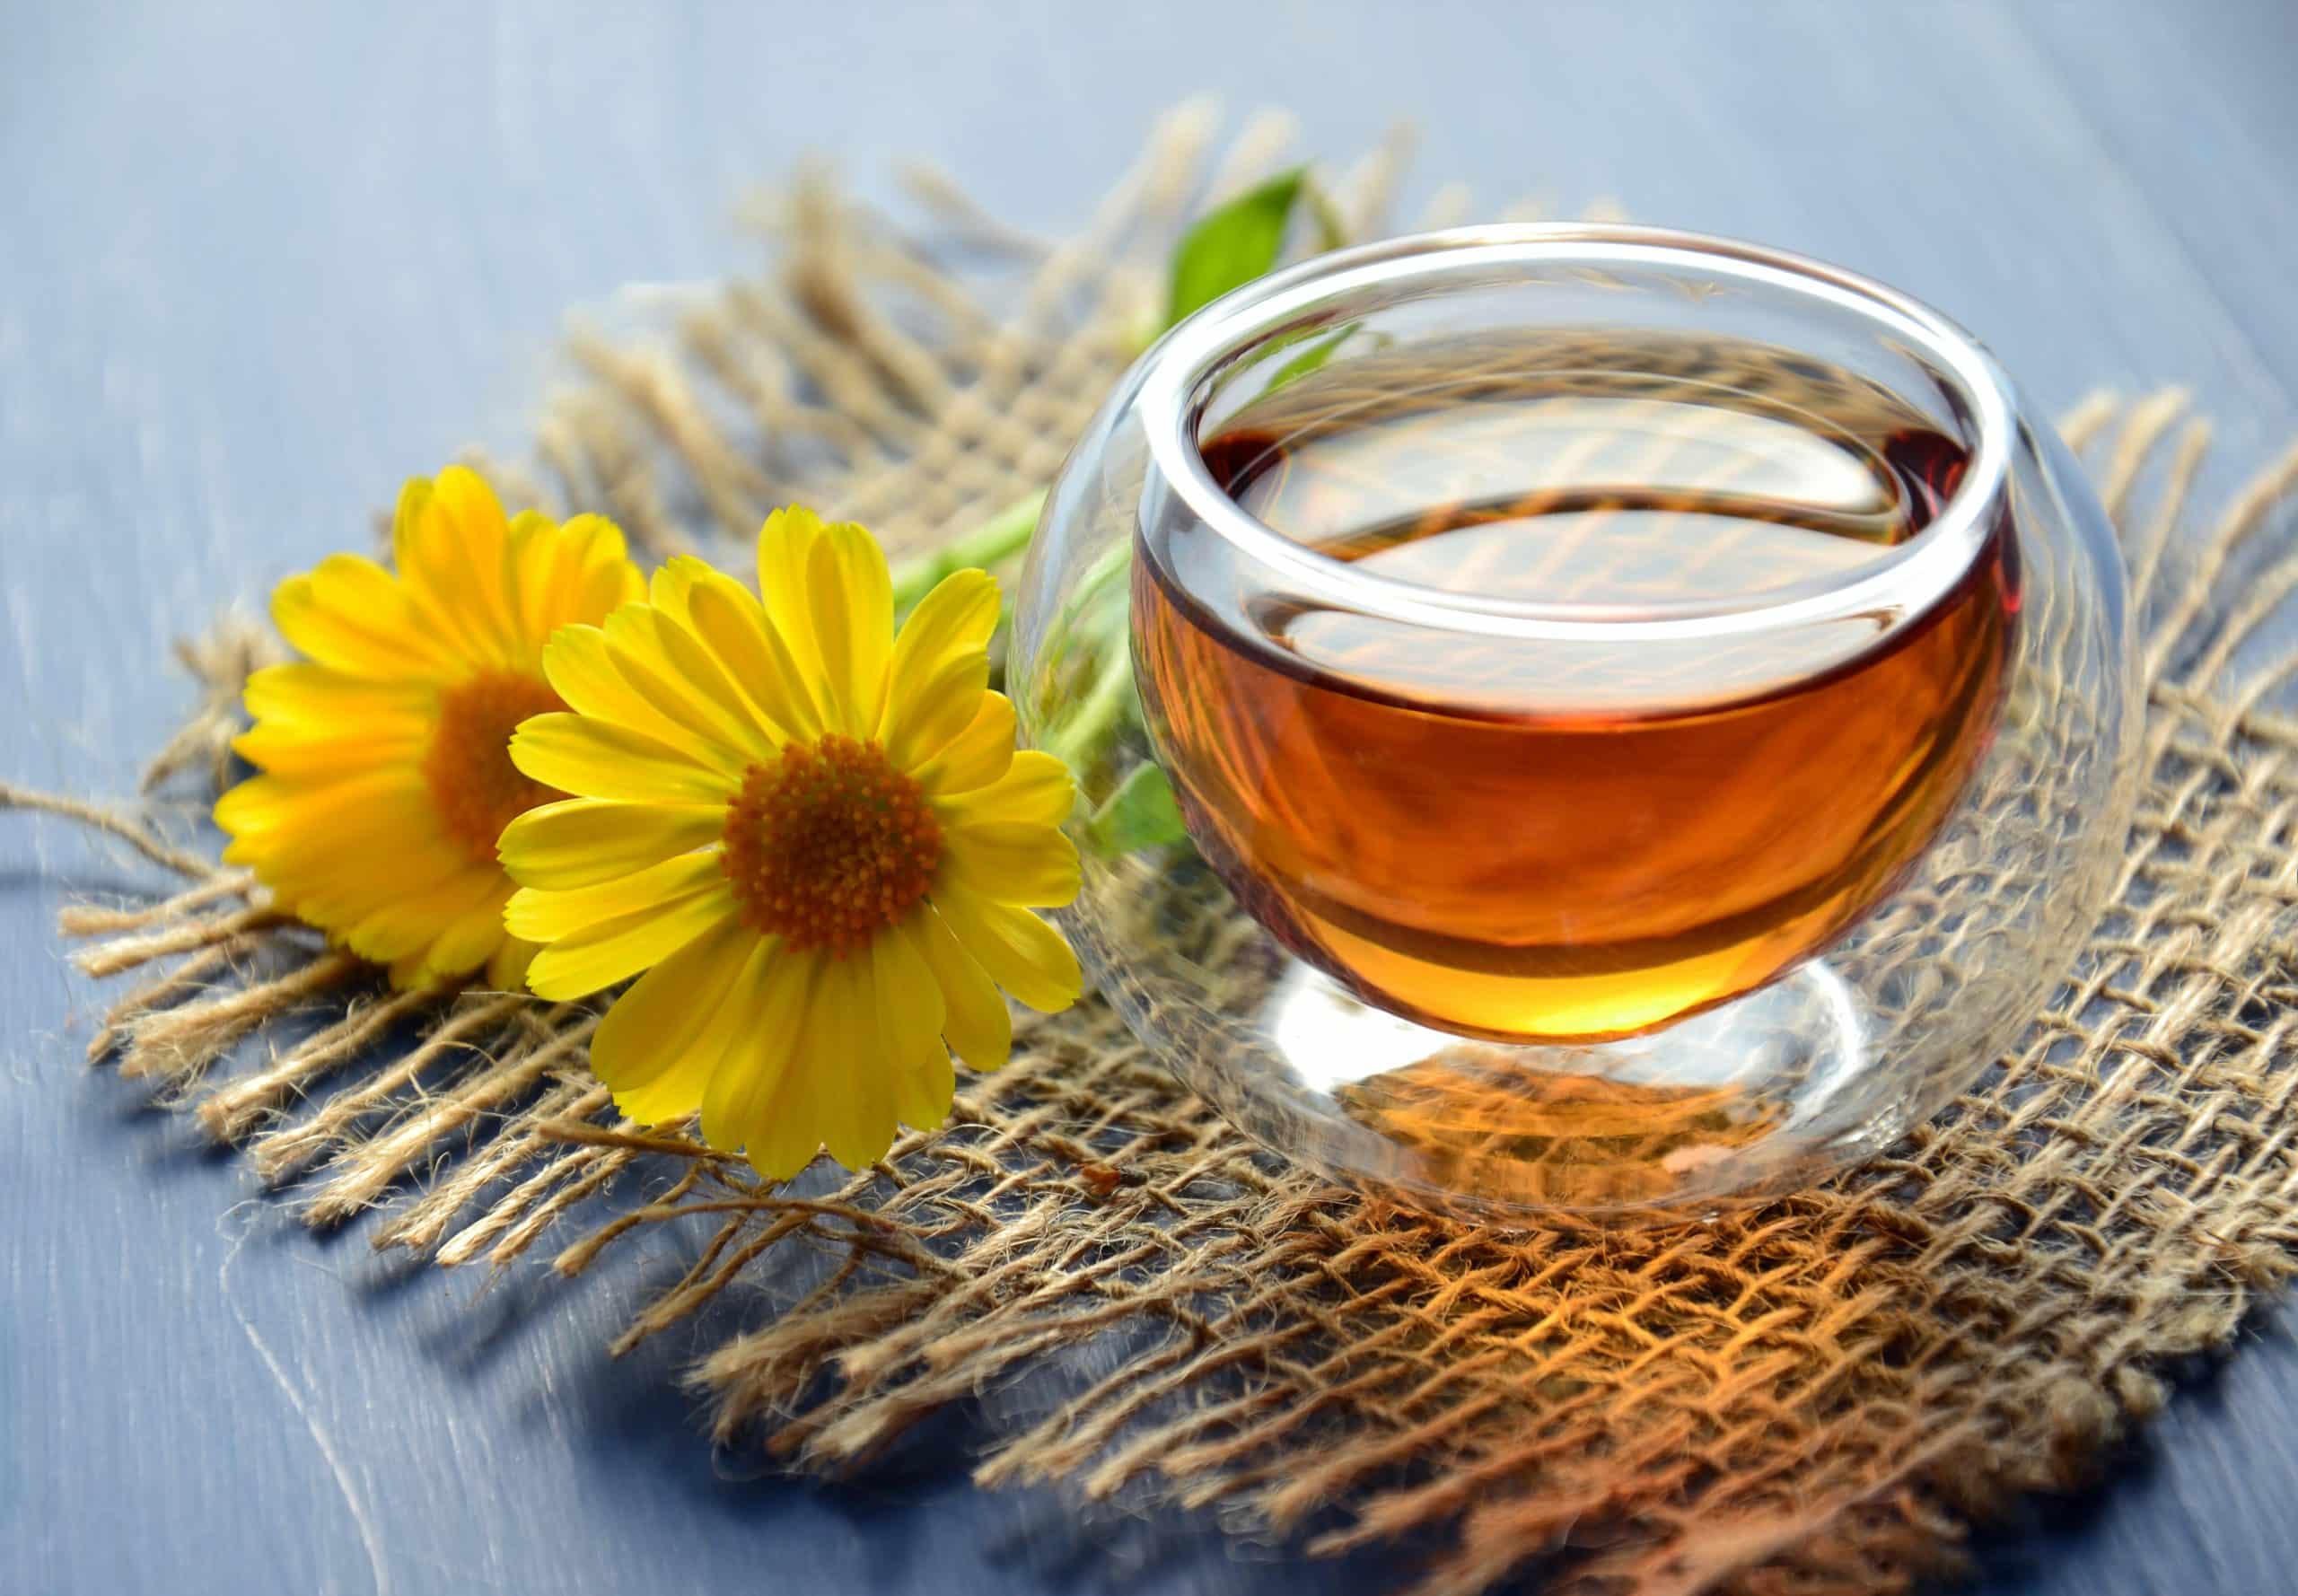 فوائد الشاي الاخضر على الريق | اكتشف فوائد الشاي الأخضر العديدة والمذهلة لصحتك وجمالك